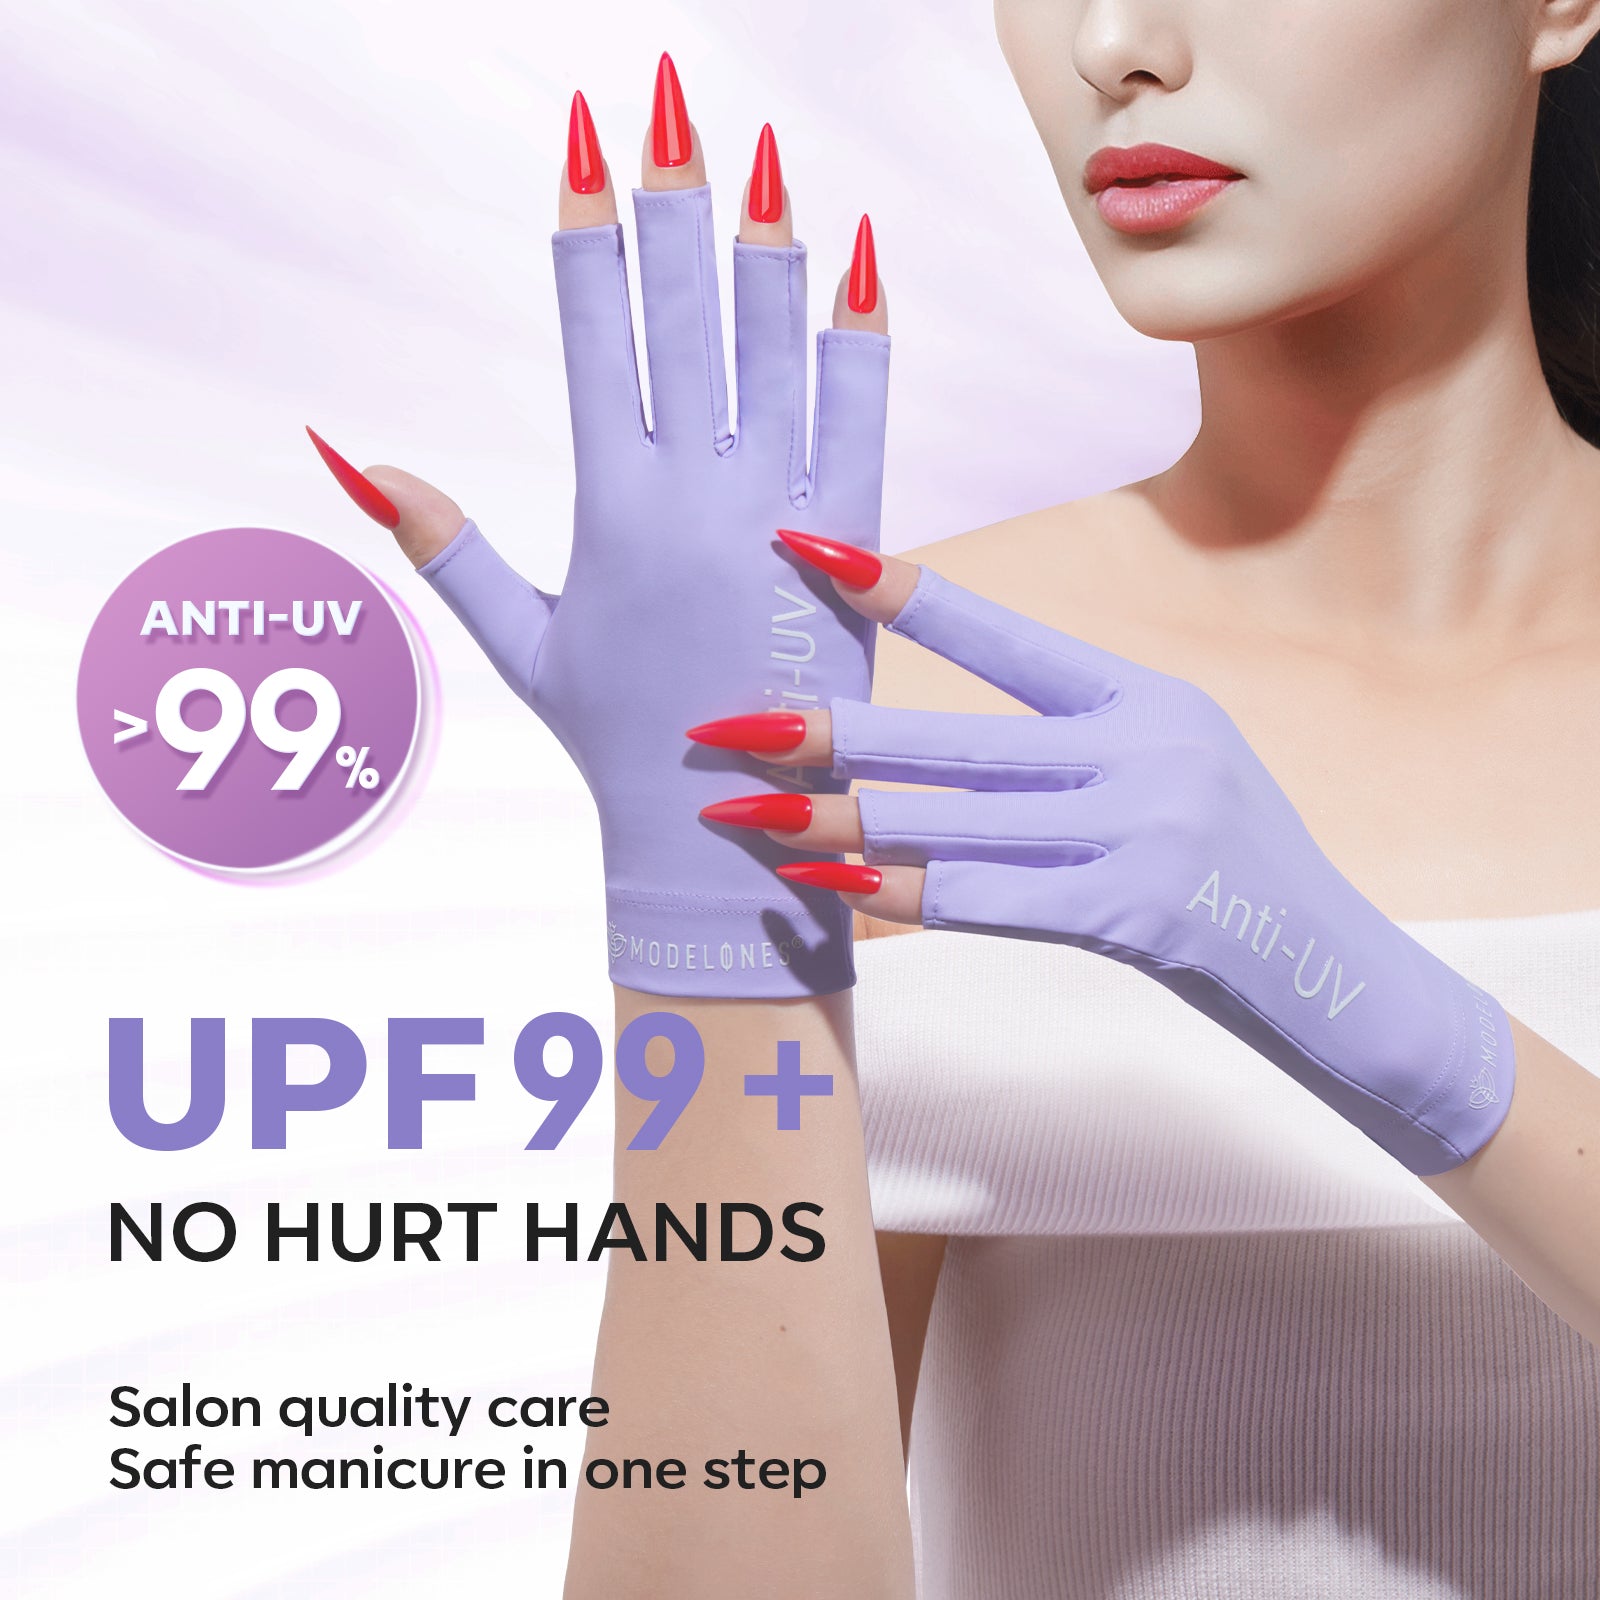 Anti-UV light Glove For Nails Salon Professional UPF 99+